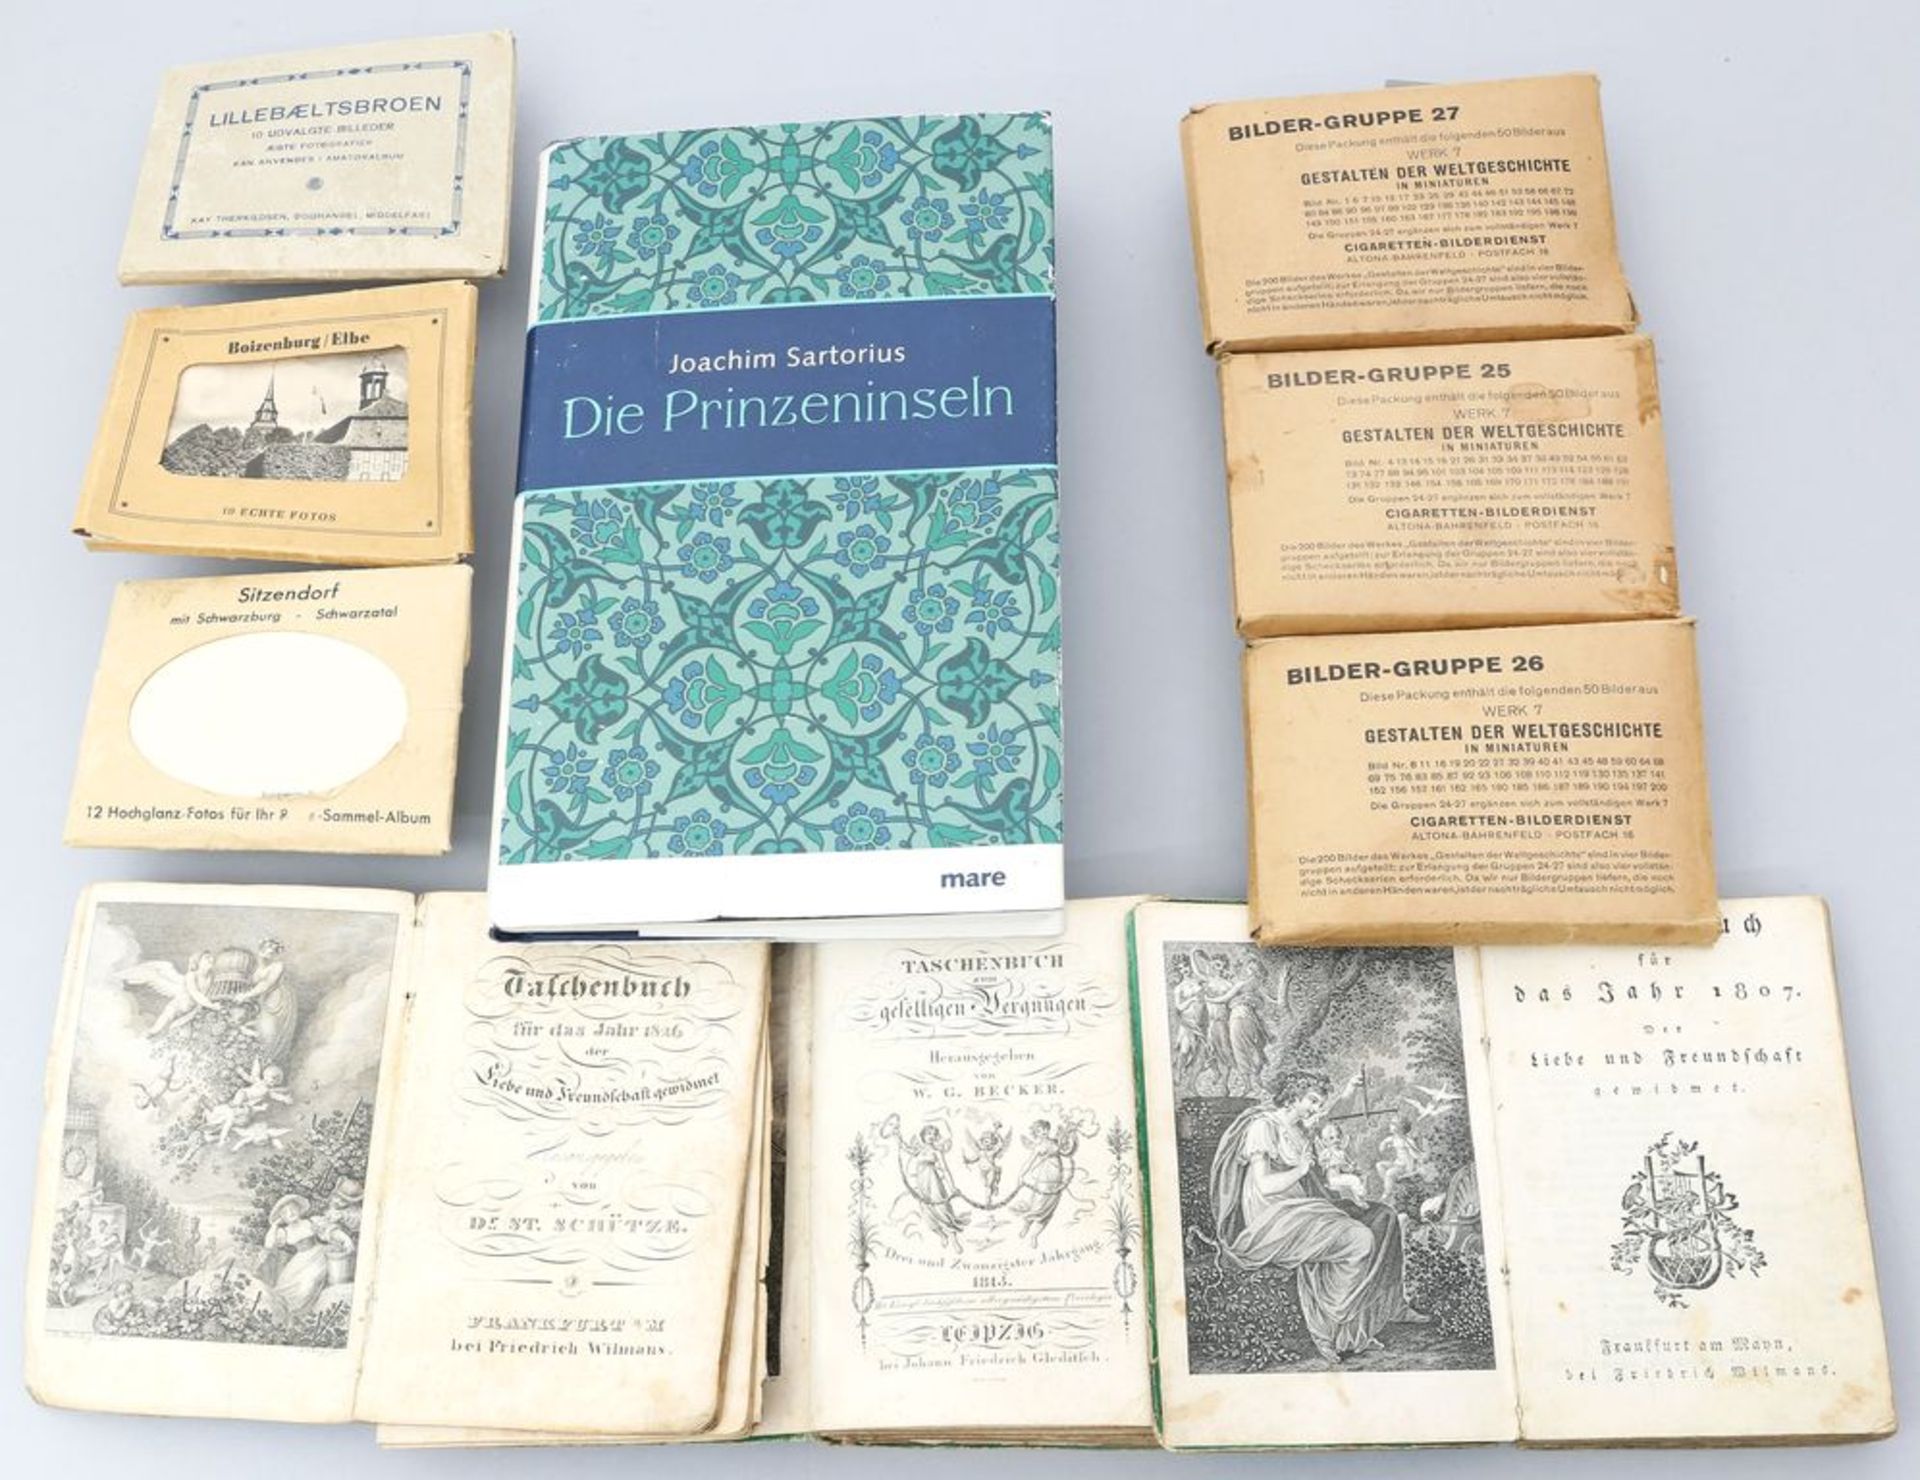 3 Bücher (Anf. 19. Jh.): "Taschenbuch zum geselligen Vergnügen" (1813), "Taschenbuch